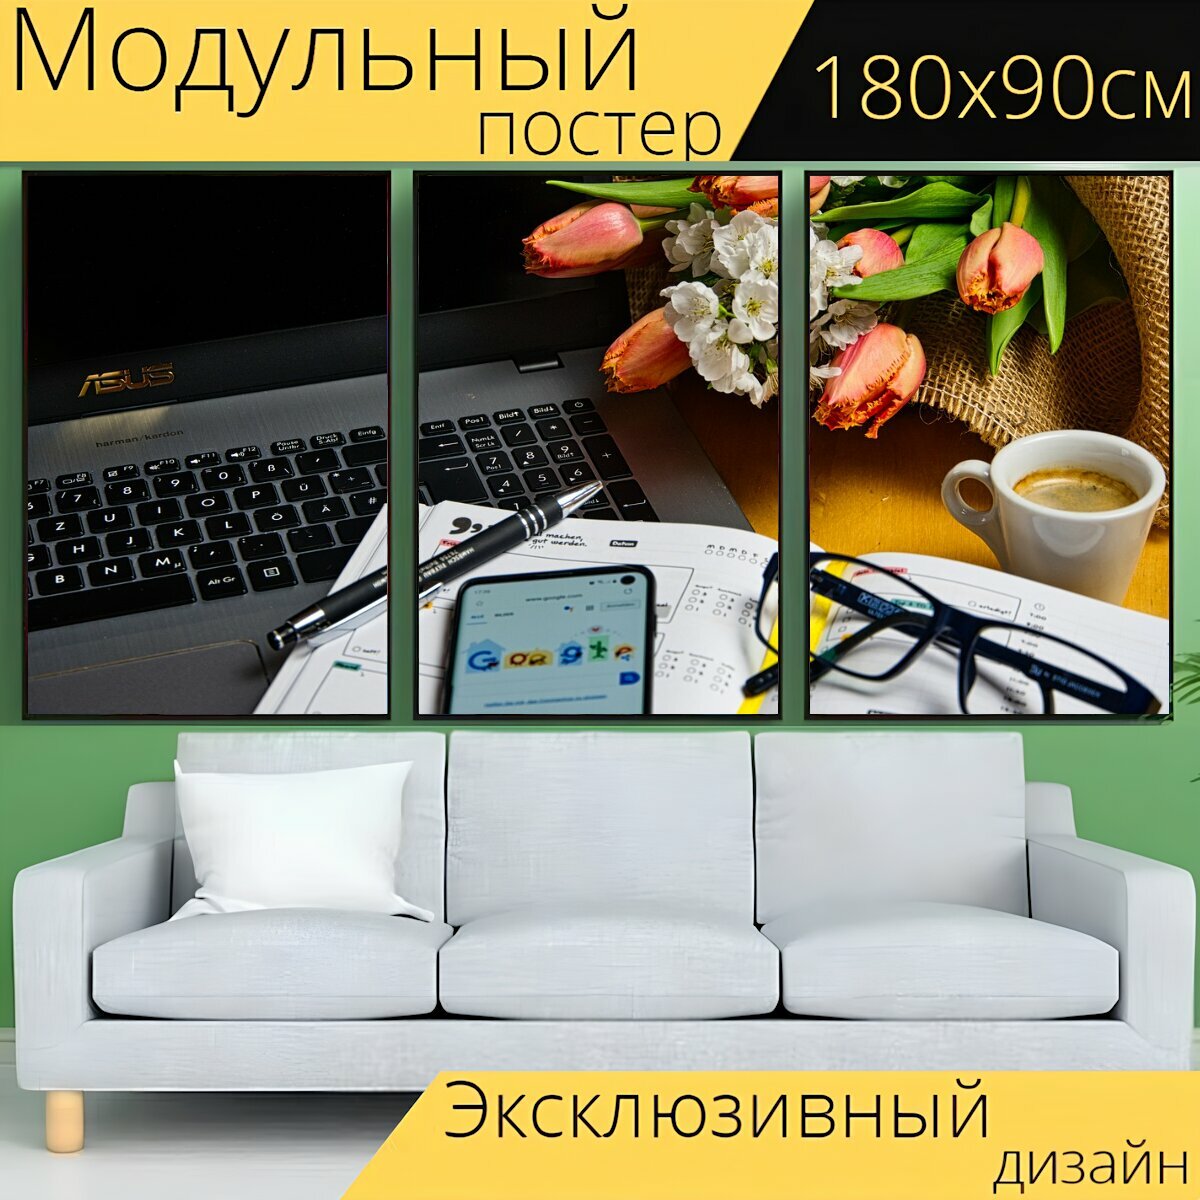 Модульный постер "Домашний офис, кофе, компьютер" 180 x 90 см. для интерьера